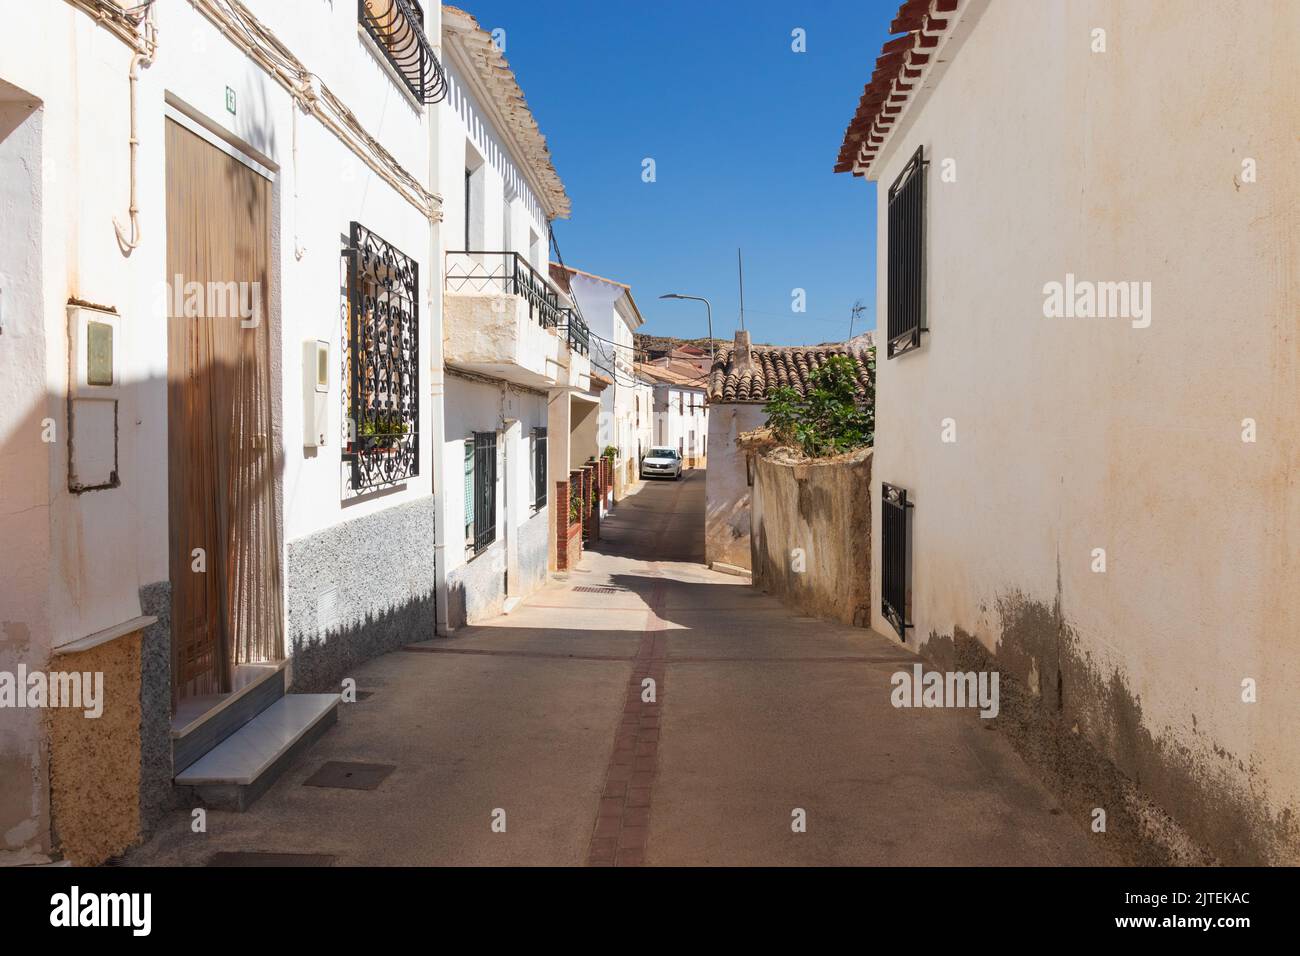 Narrow Street in Partaloa a Small Town in the Almanzora Valley, Almeria province, Andalucia Spain Stock Photo